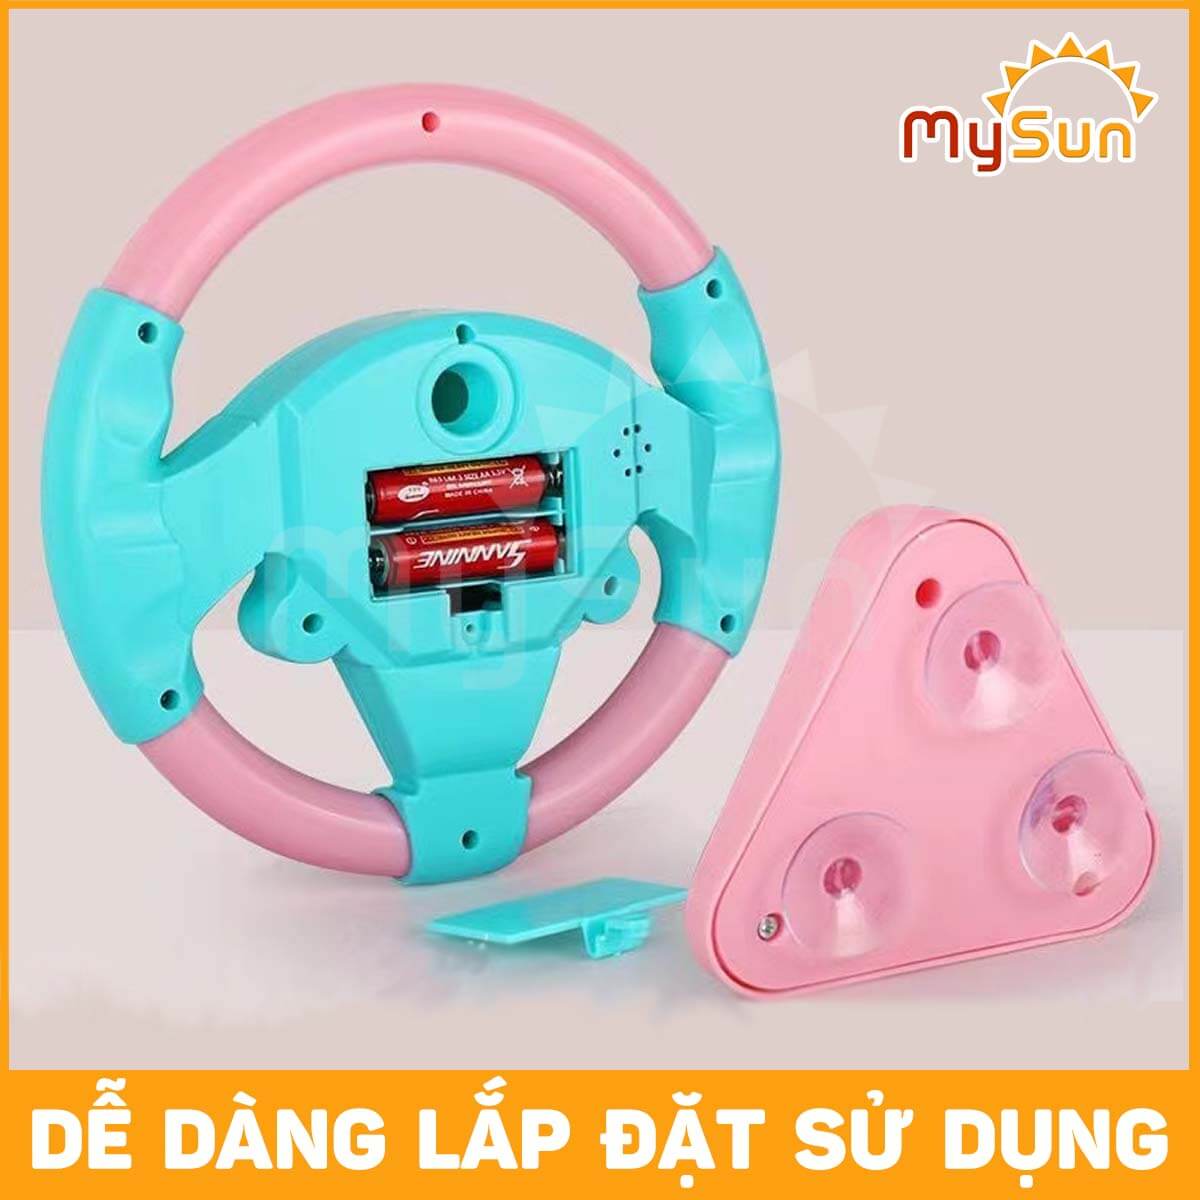 Vô lăng đồ chơi cho bé gắn xe ô tô có nhạc trẻ em [Tặng Pin] MySun